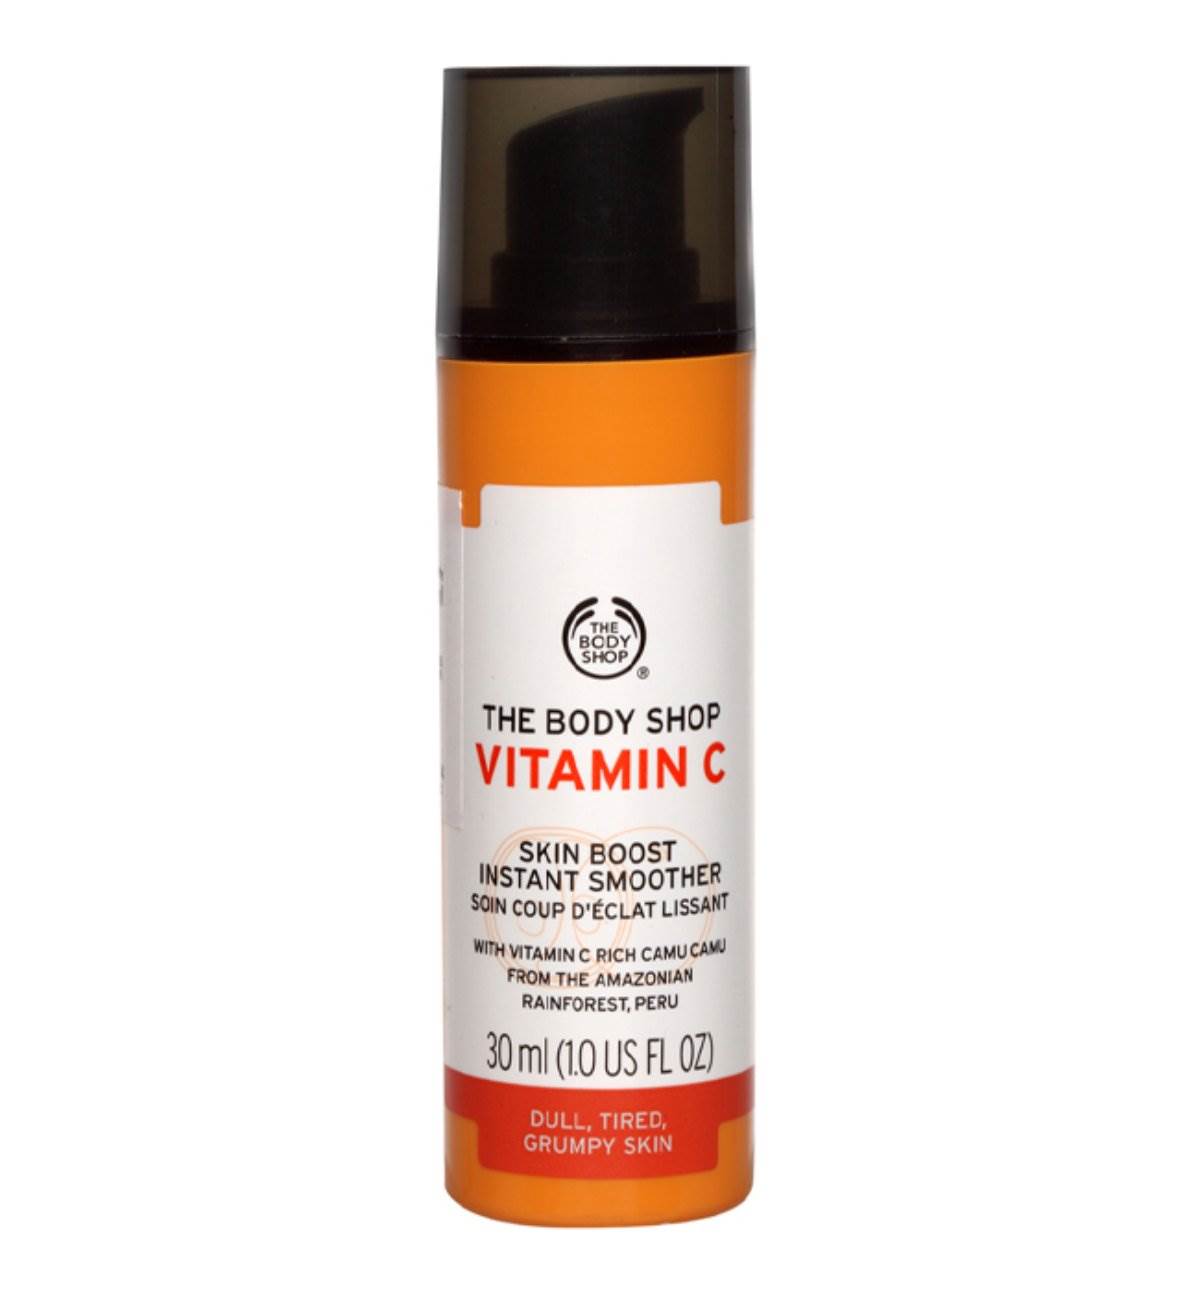  The Body Shop – Vitamin C Skin Booster Instant Smoother čini da koža izgleda sjajno. 